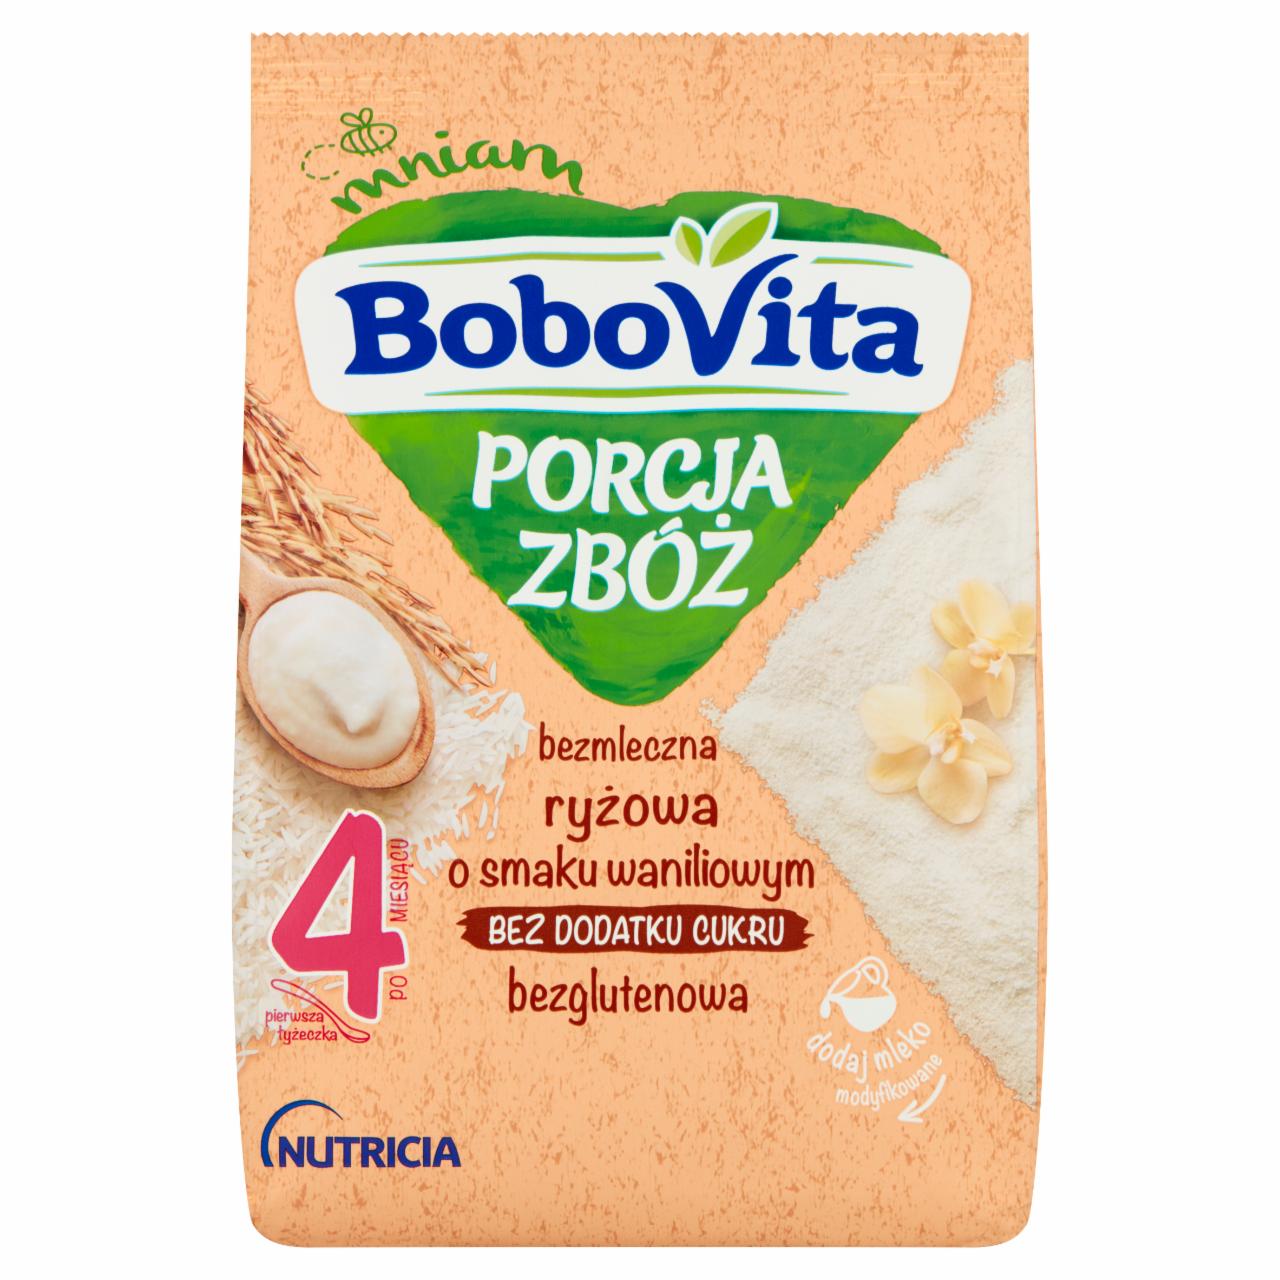 Zdjęcia - BoboVita Porcja Zbóż Kaszka bezmleczna ryżowa o smaku waniliowym po 4 miesiącu 170 g